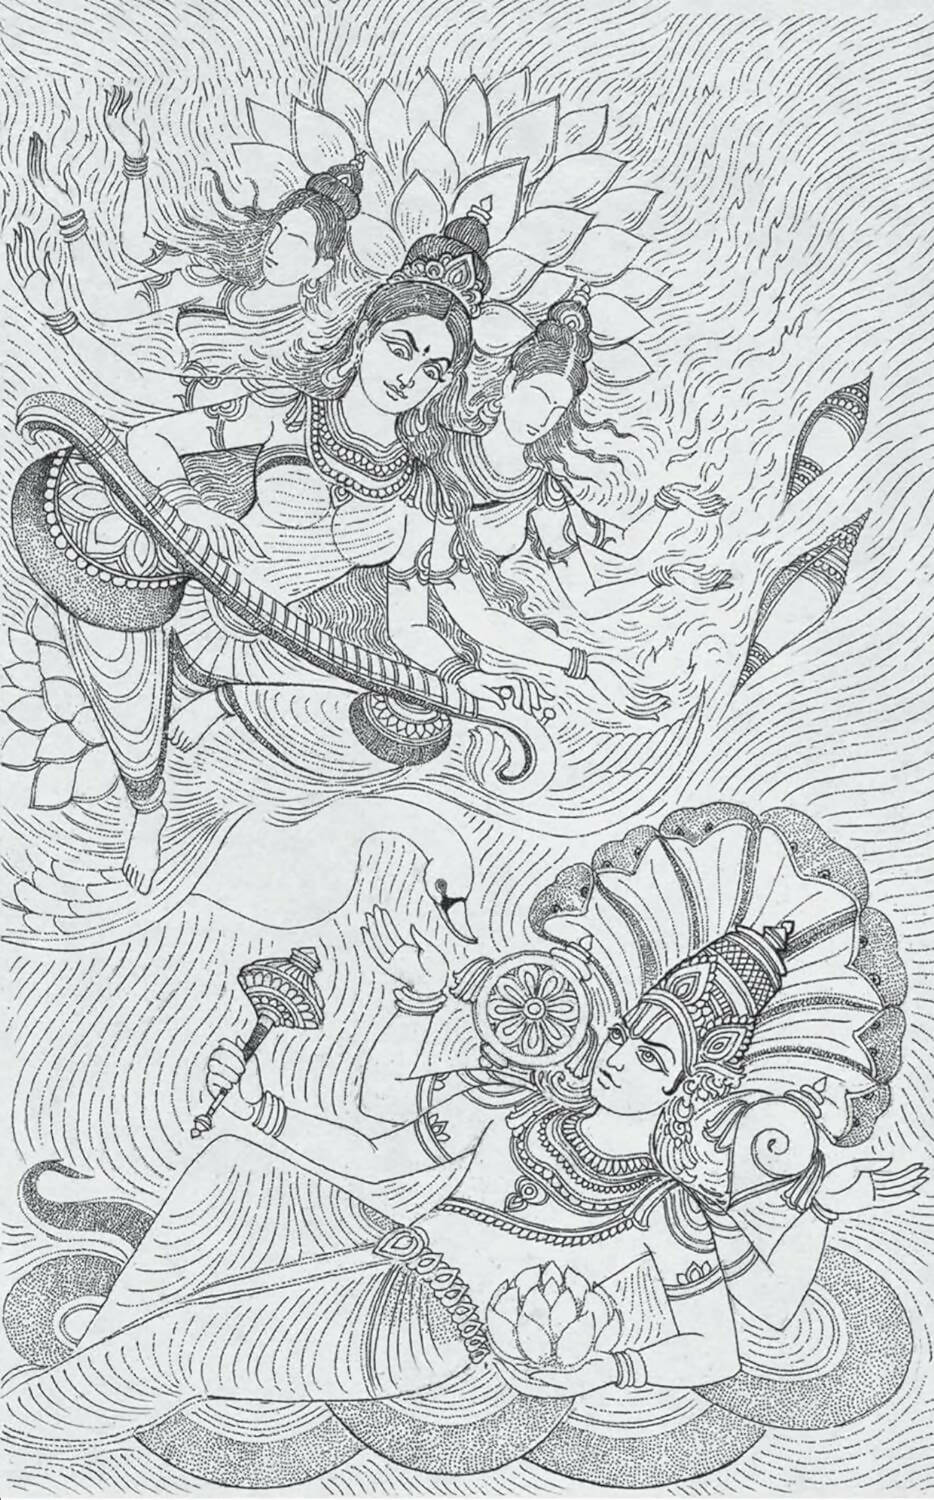 Mahagatha 100 Tales From The Puranas Satyarth Nayak - English